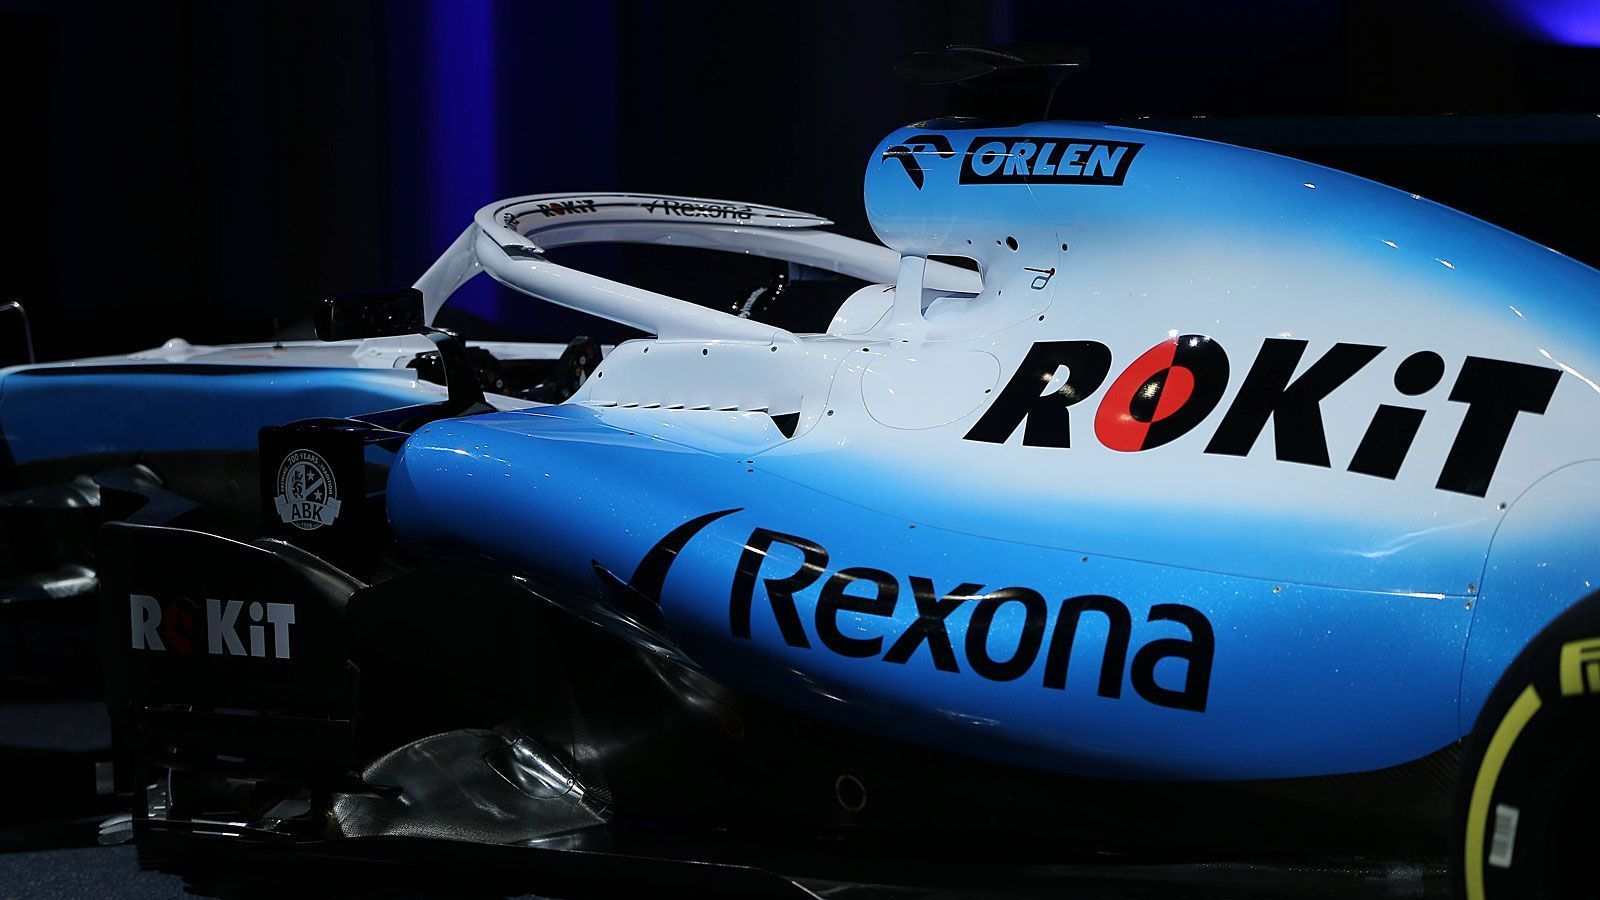 
                <strong>Formel-1-Autos 2019: Williams Racing</strong><br>
                Angetrieben wird das Fahrzeug auch 2019 von einem Mercedes-Motor. Nach nur sieben WM-Punkten in der vergangenen Saison soll diesmal alles besser werden. Teamchefin Claire Williams frohlockt: "Wir haben fast niemanden aus dem Rennteam verloren, und das zeigt die Stärke, die wir bei Williams haben."
              